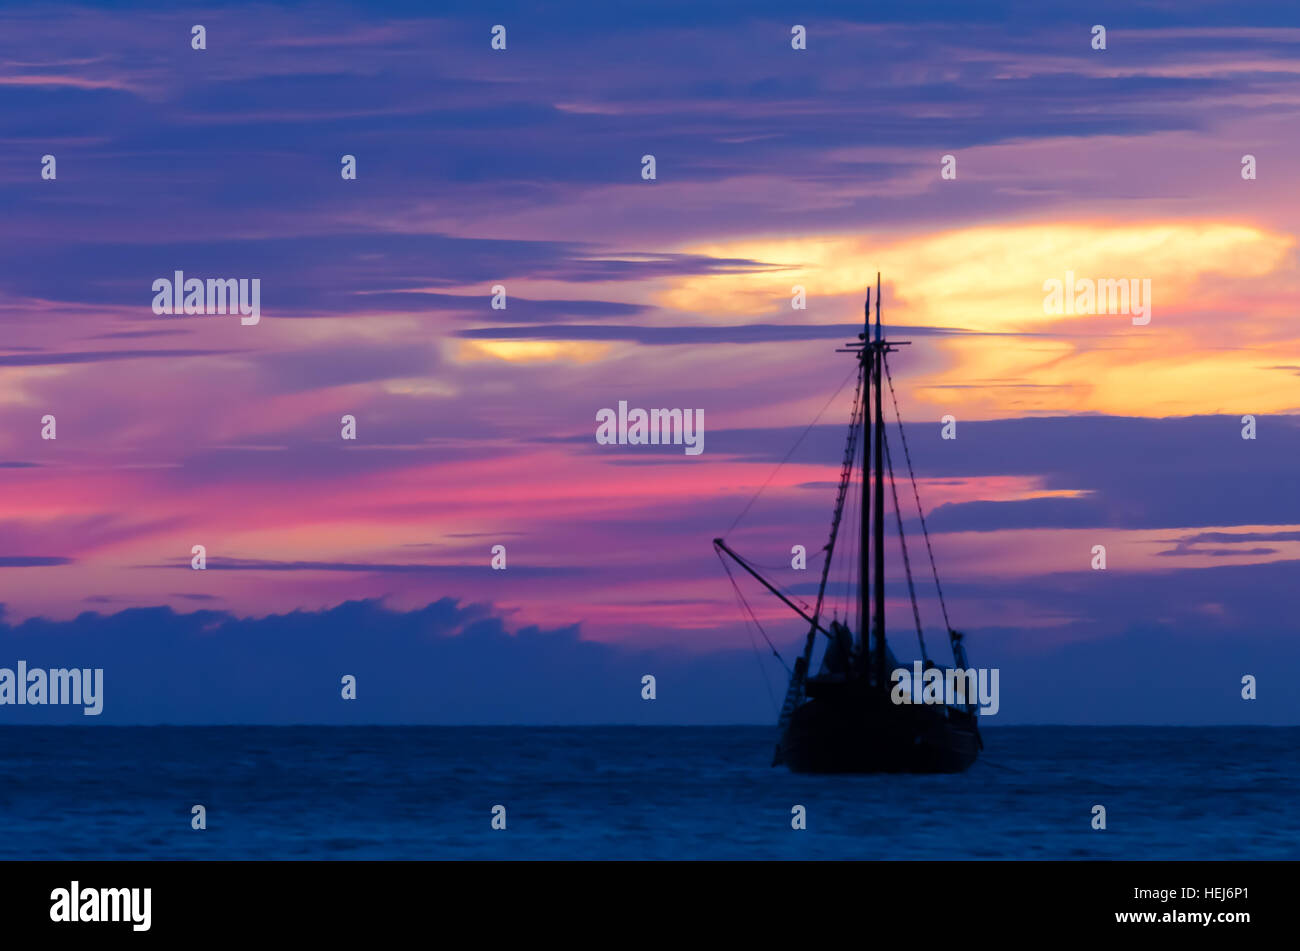 Pirate barca a vela sul mare navigando verso il tramonto. L'immagine è stata presa da Palm Beach di Aruba, nel mar dei Caraibi. Foto Stock